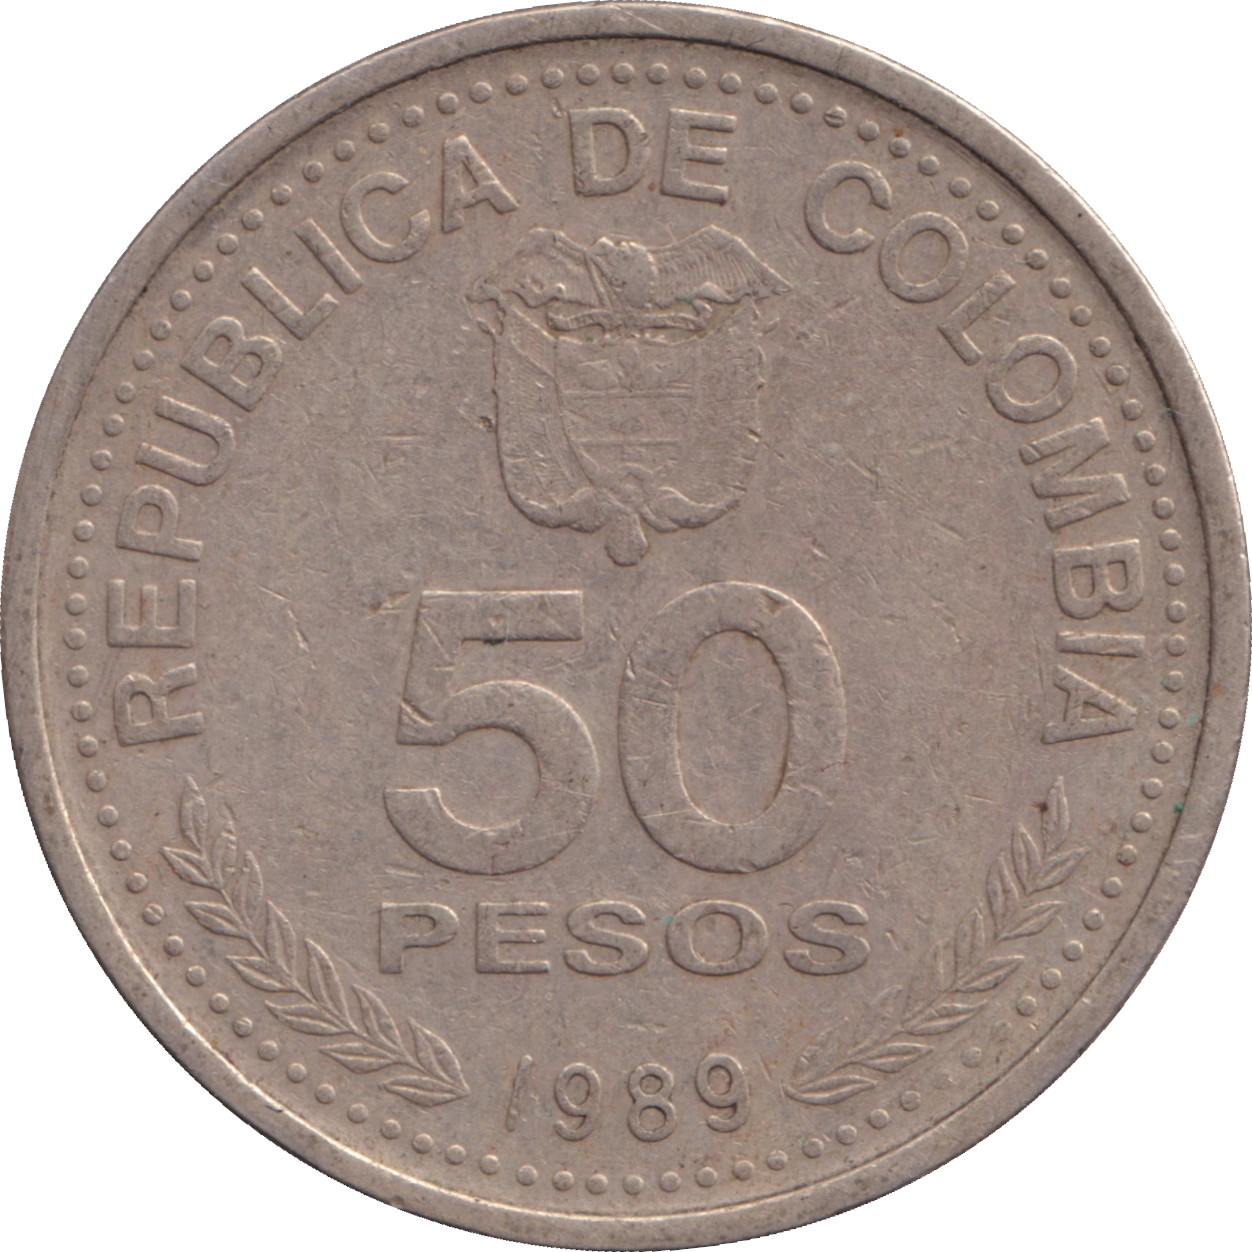 50 pesos - Constitution